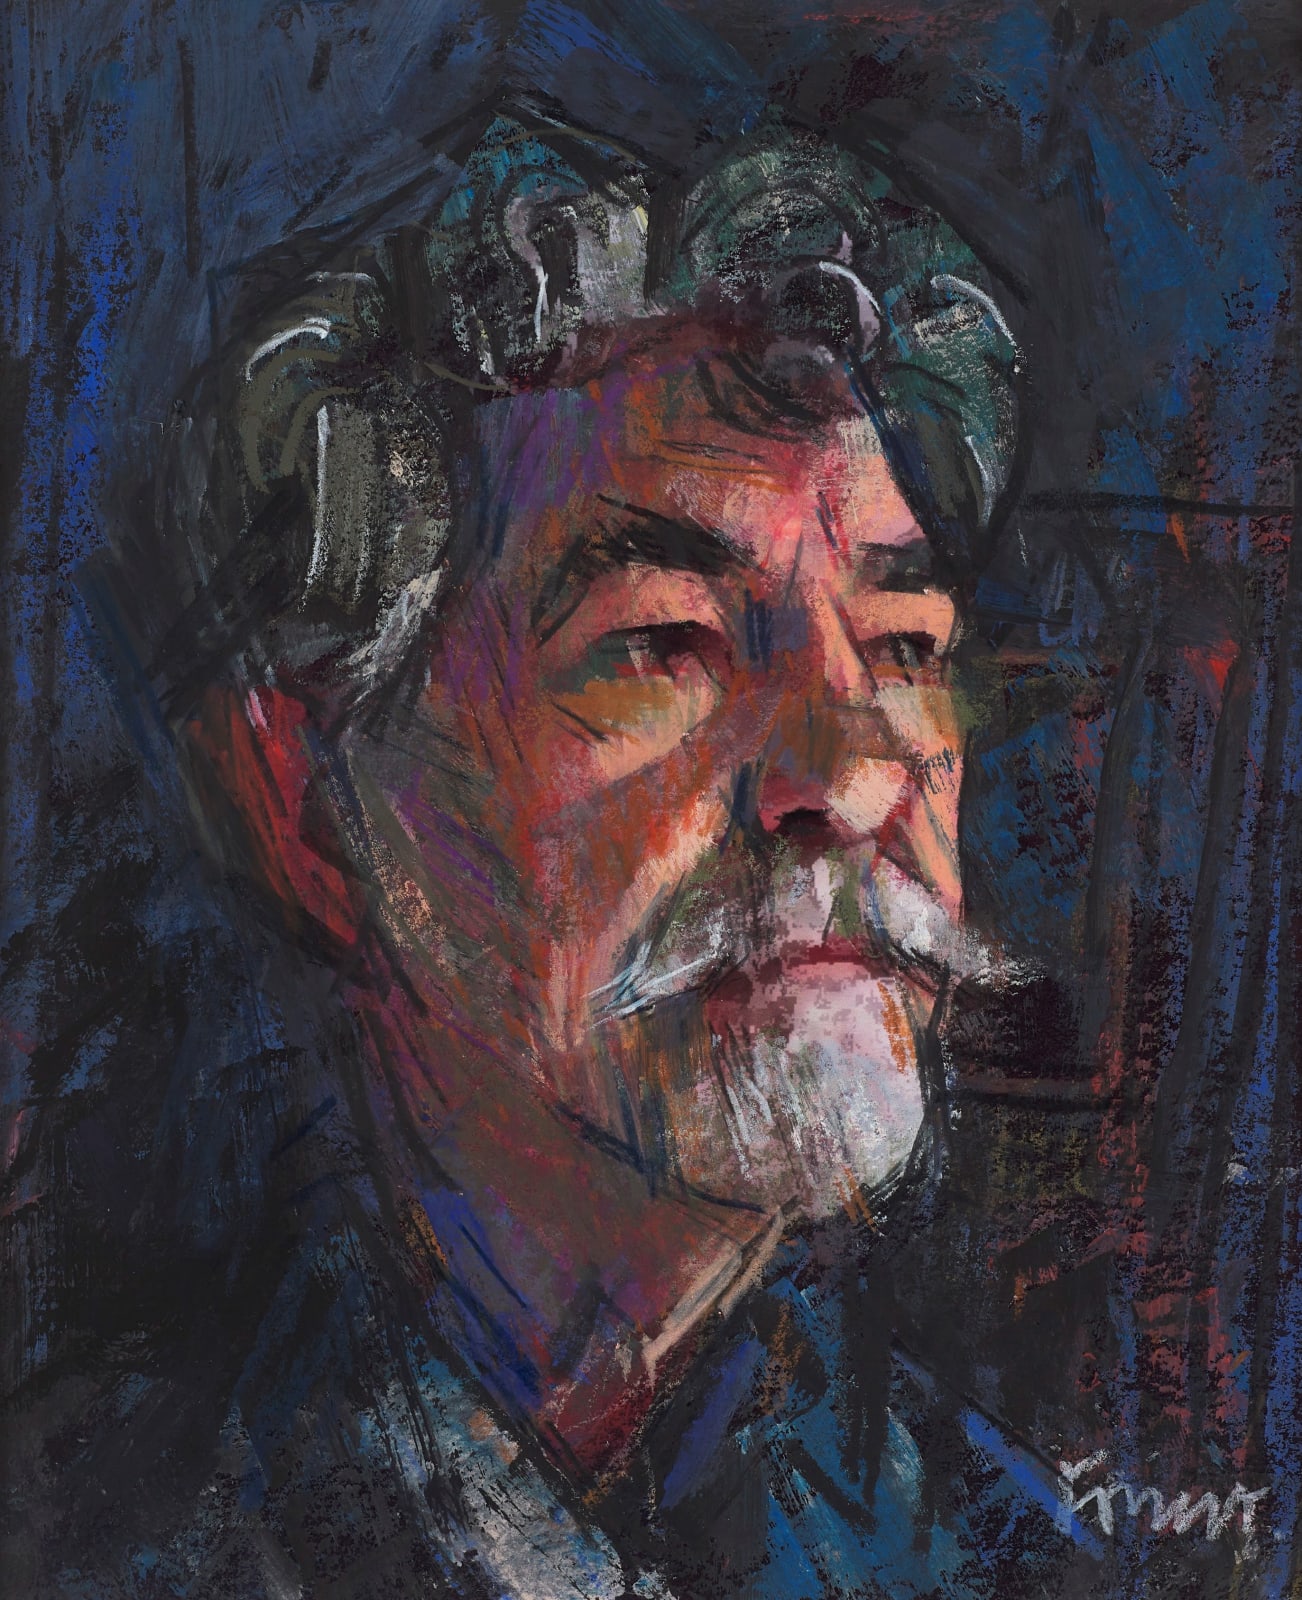 Archie Forrest, Auto Portrait after Iain Clark Snap, 2022